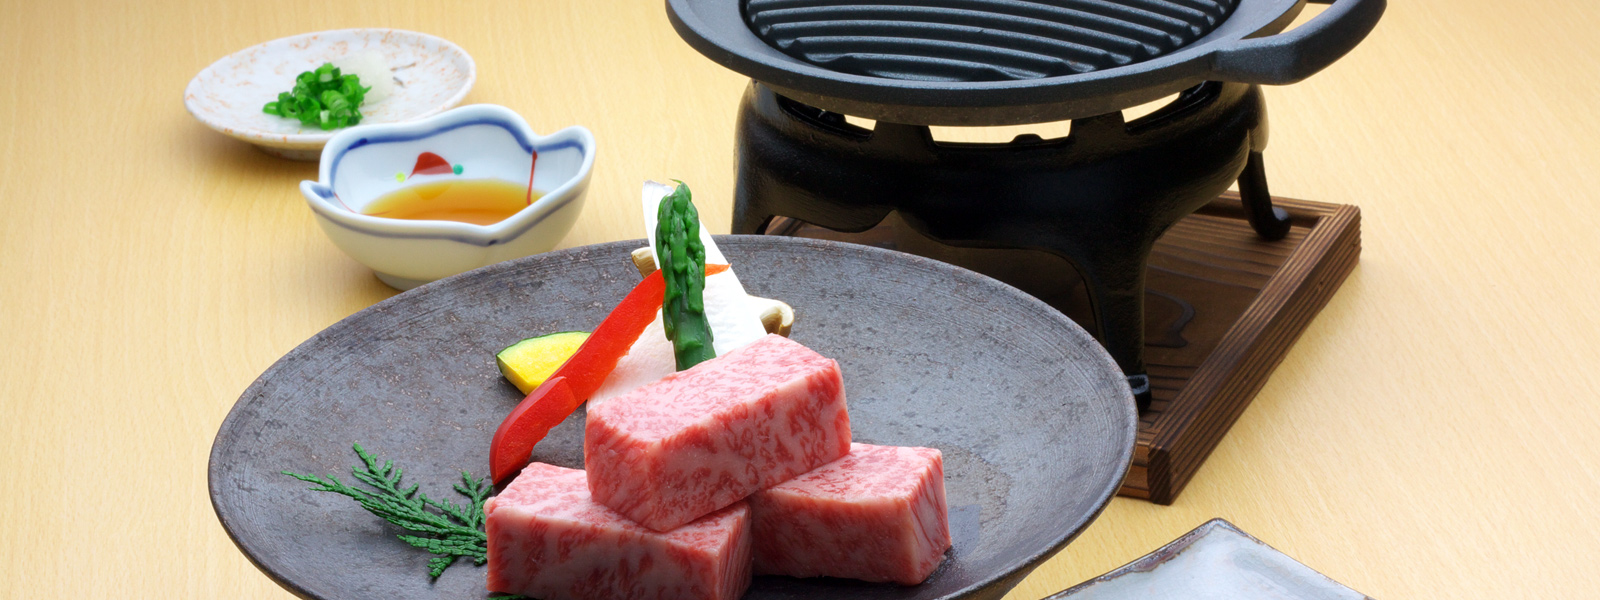 お料理はふじやま和牛を使用した絶品コース。